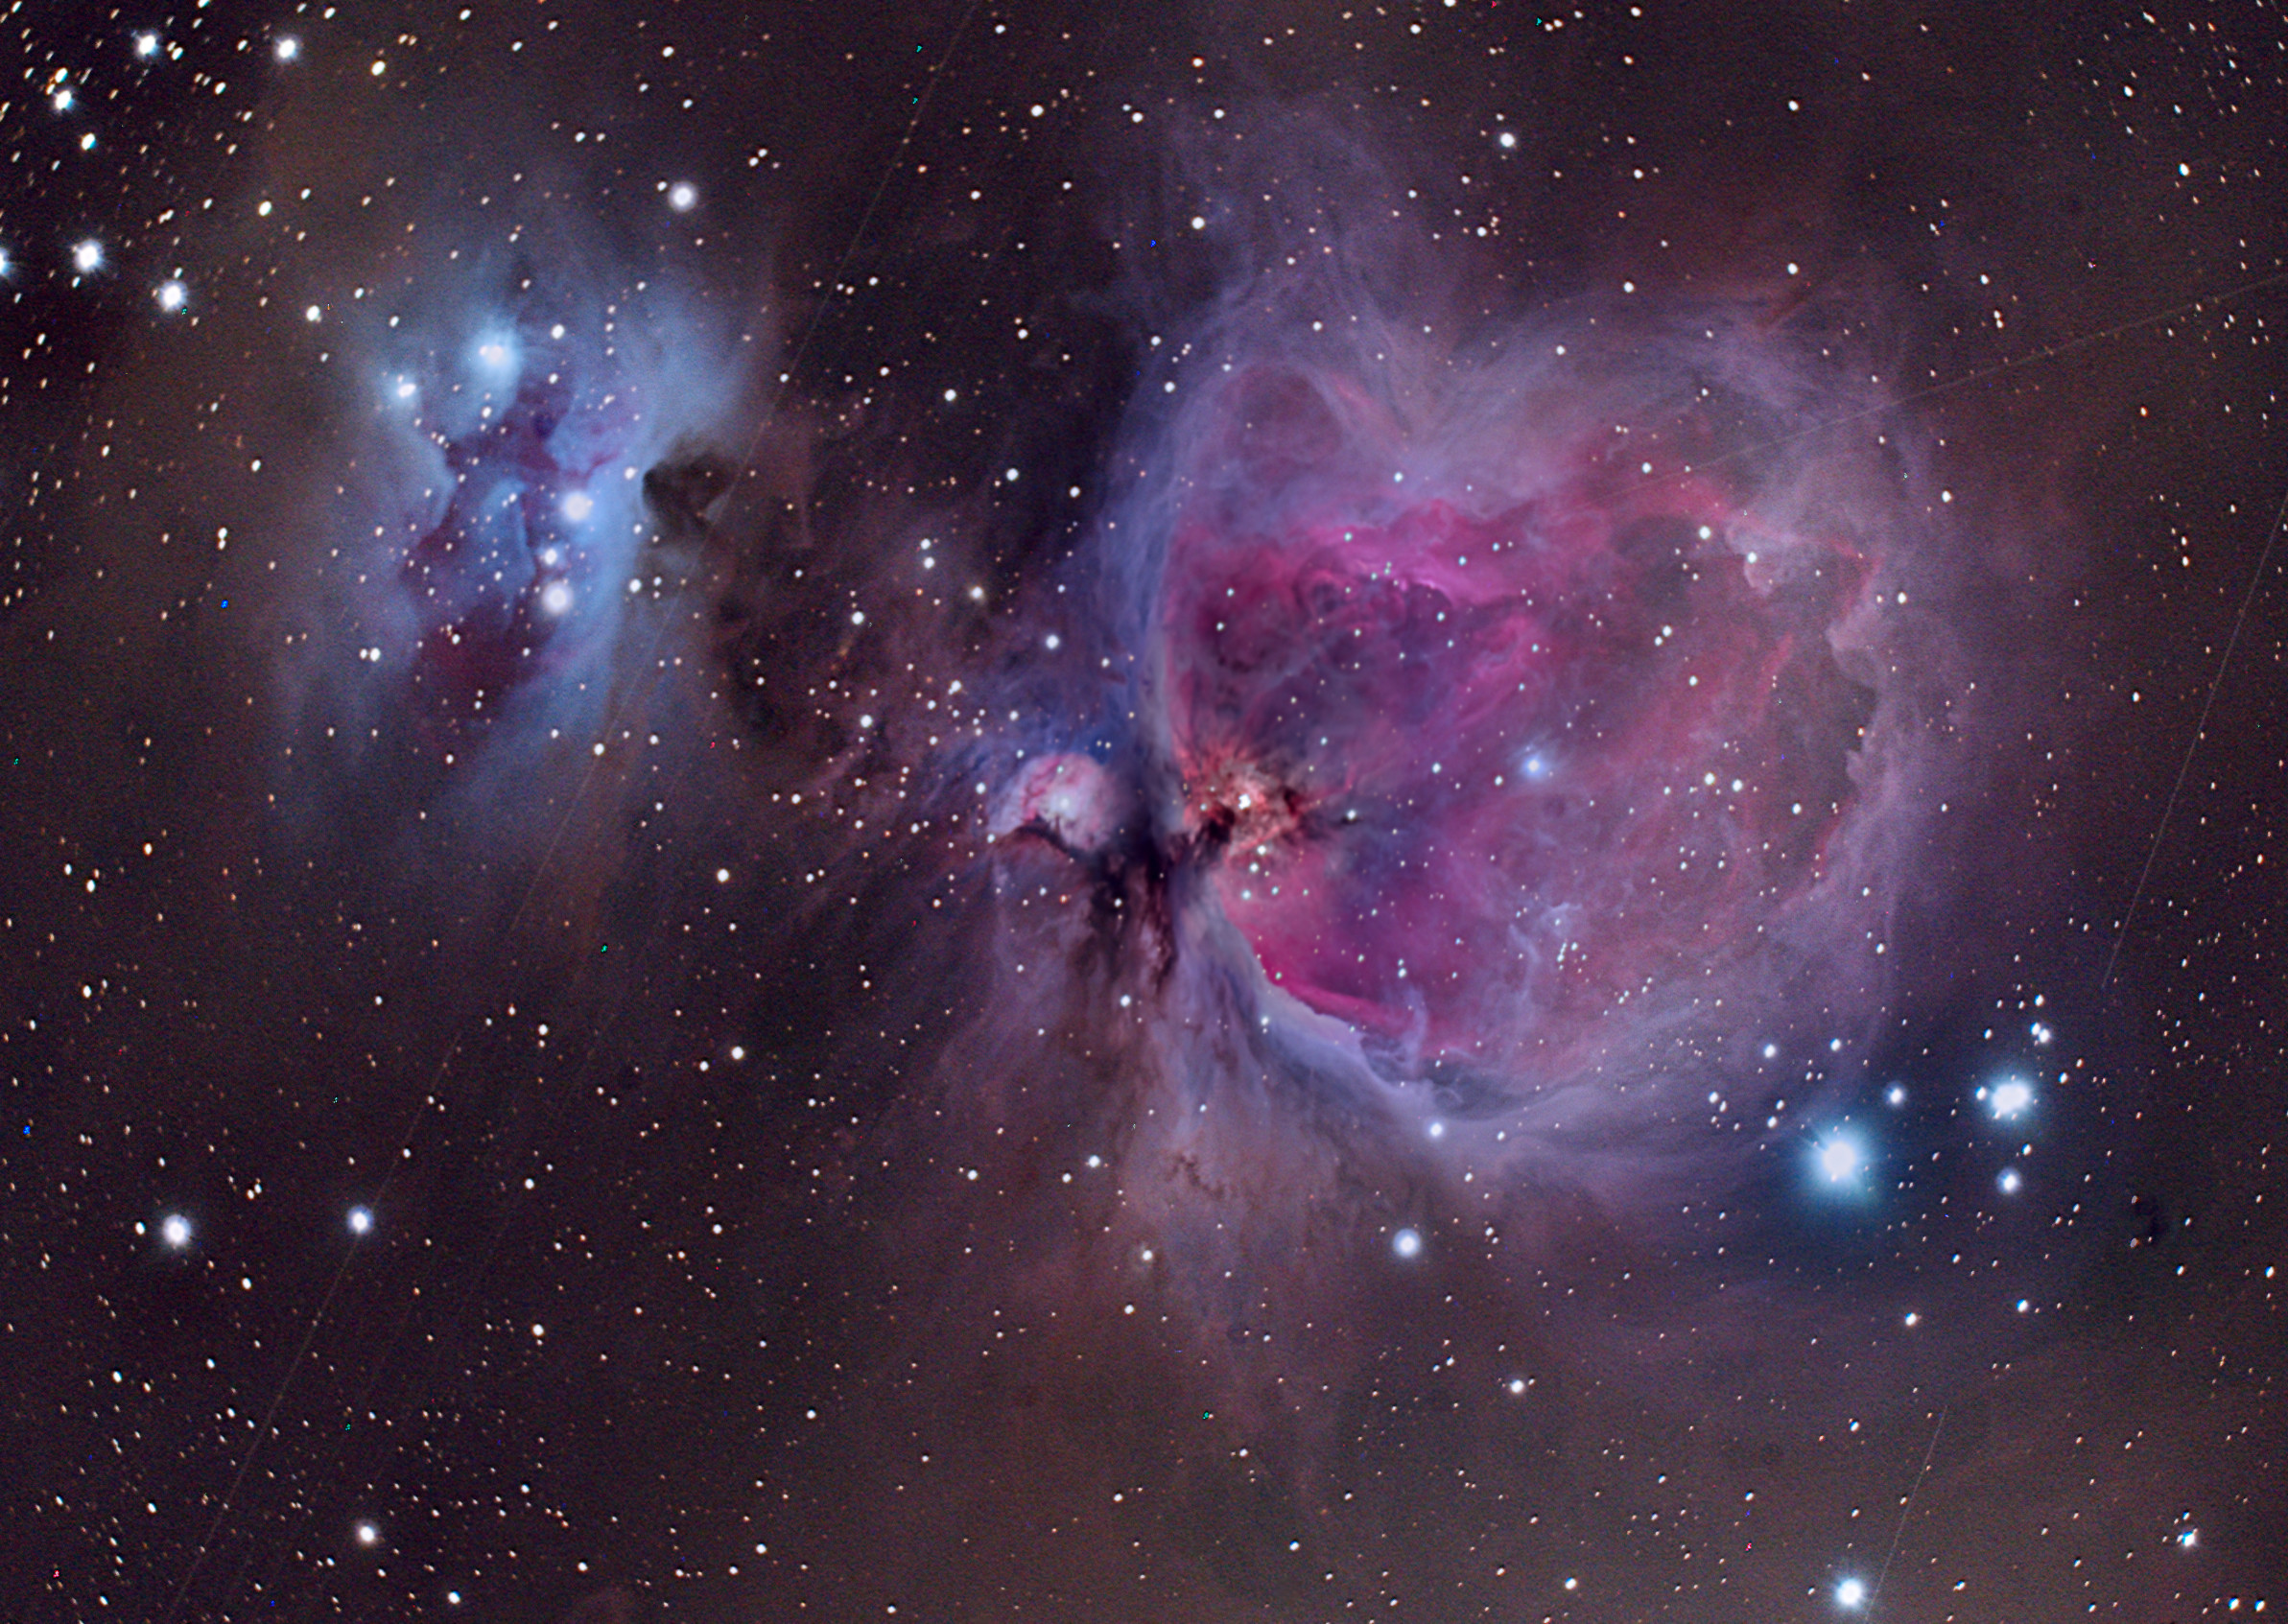 2385x1693 ... Space orion nebula wallpaper | 2560x1600 | #34645 ...